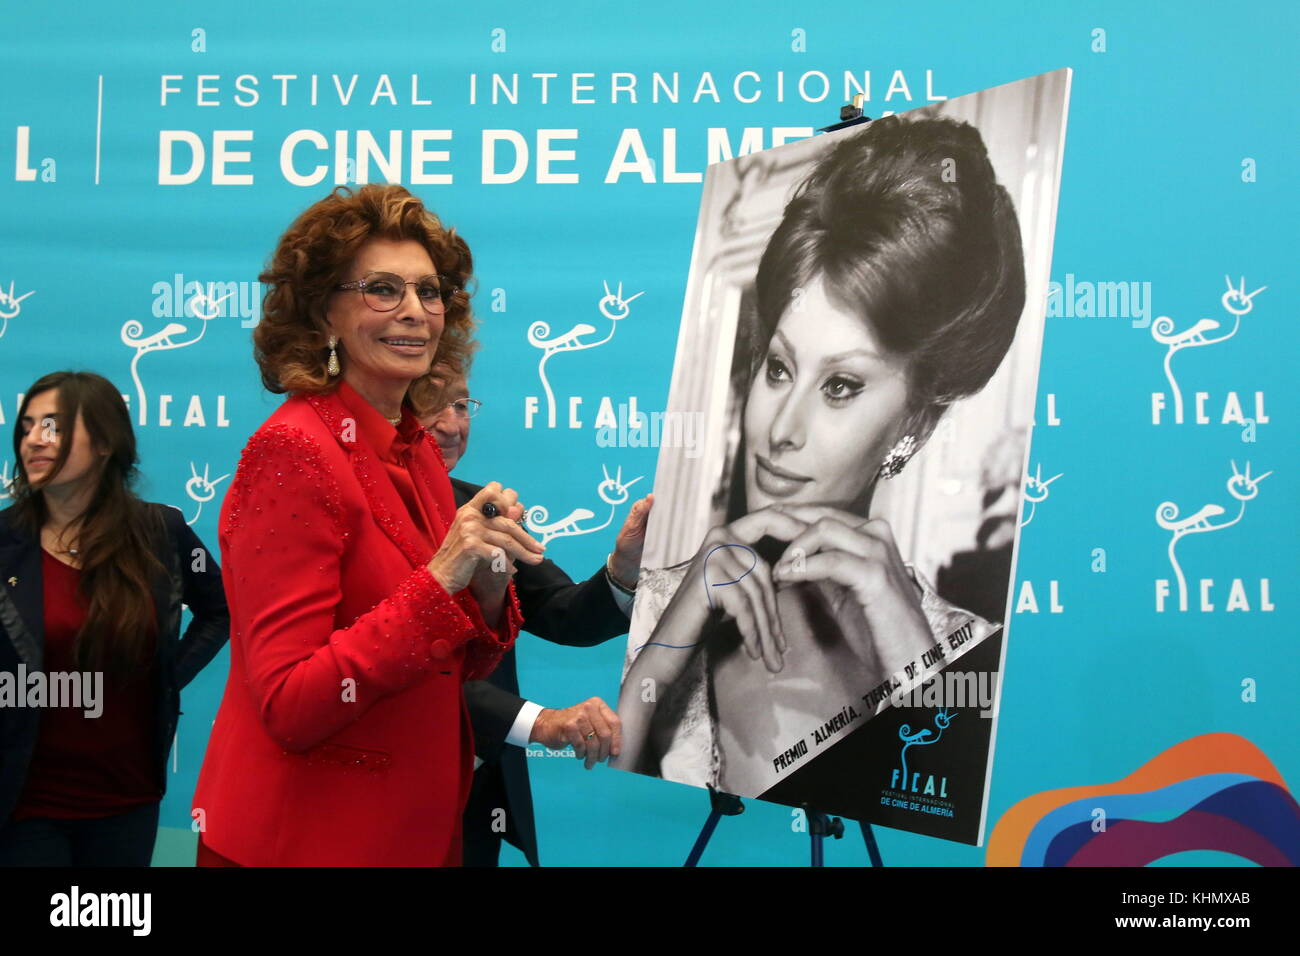 18 novembre 2017 - 18 novembre 2017 (Almeria) almeria international film festival italiano di attrice Sofia Loren riceve l'omaggio di Almeria, terra di cinema di fical per la sua performance in "blanco, Rojo y .', shot in provincia all'inizio del 70s. Sophia Loren il maggior successo attrice italiana di tutti i tempi, la prima donna a vincere l'oscar per una lingua non inglese e film di uno dei più ricorrenti miti in celluloide ha acceso fino ad oggi la stella che si ricorderà di lei per sempre nel "walk of fame" "dell'Almeria capitale. vestito di rosso - con una tuta di camicia adornata con diamanti Foto Stock